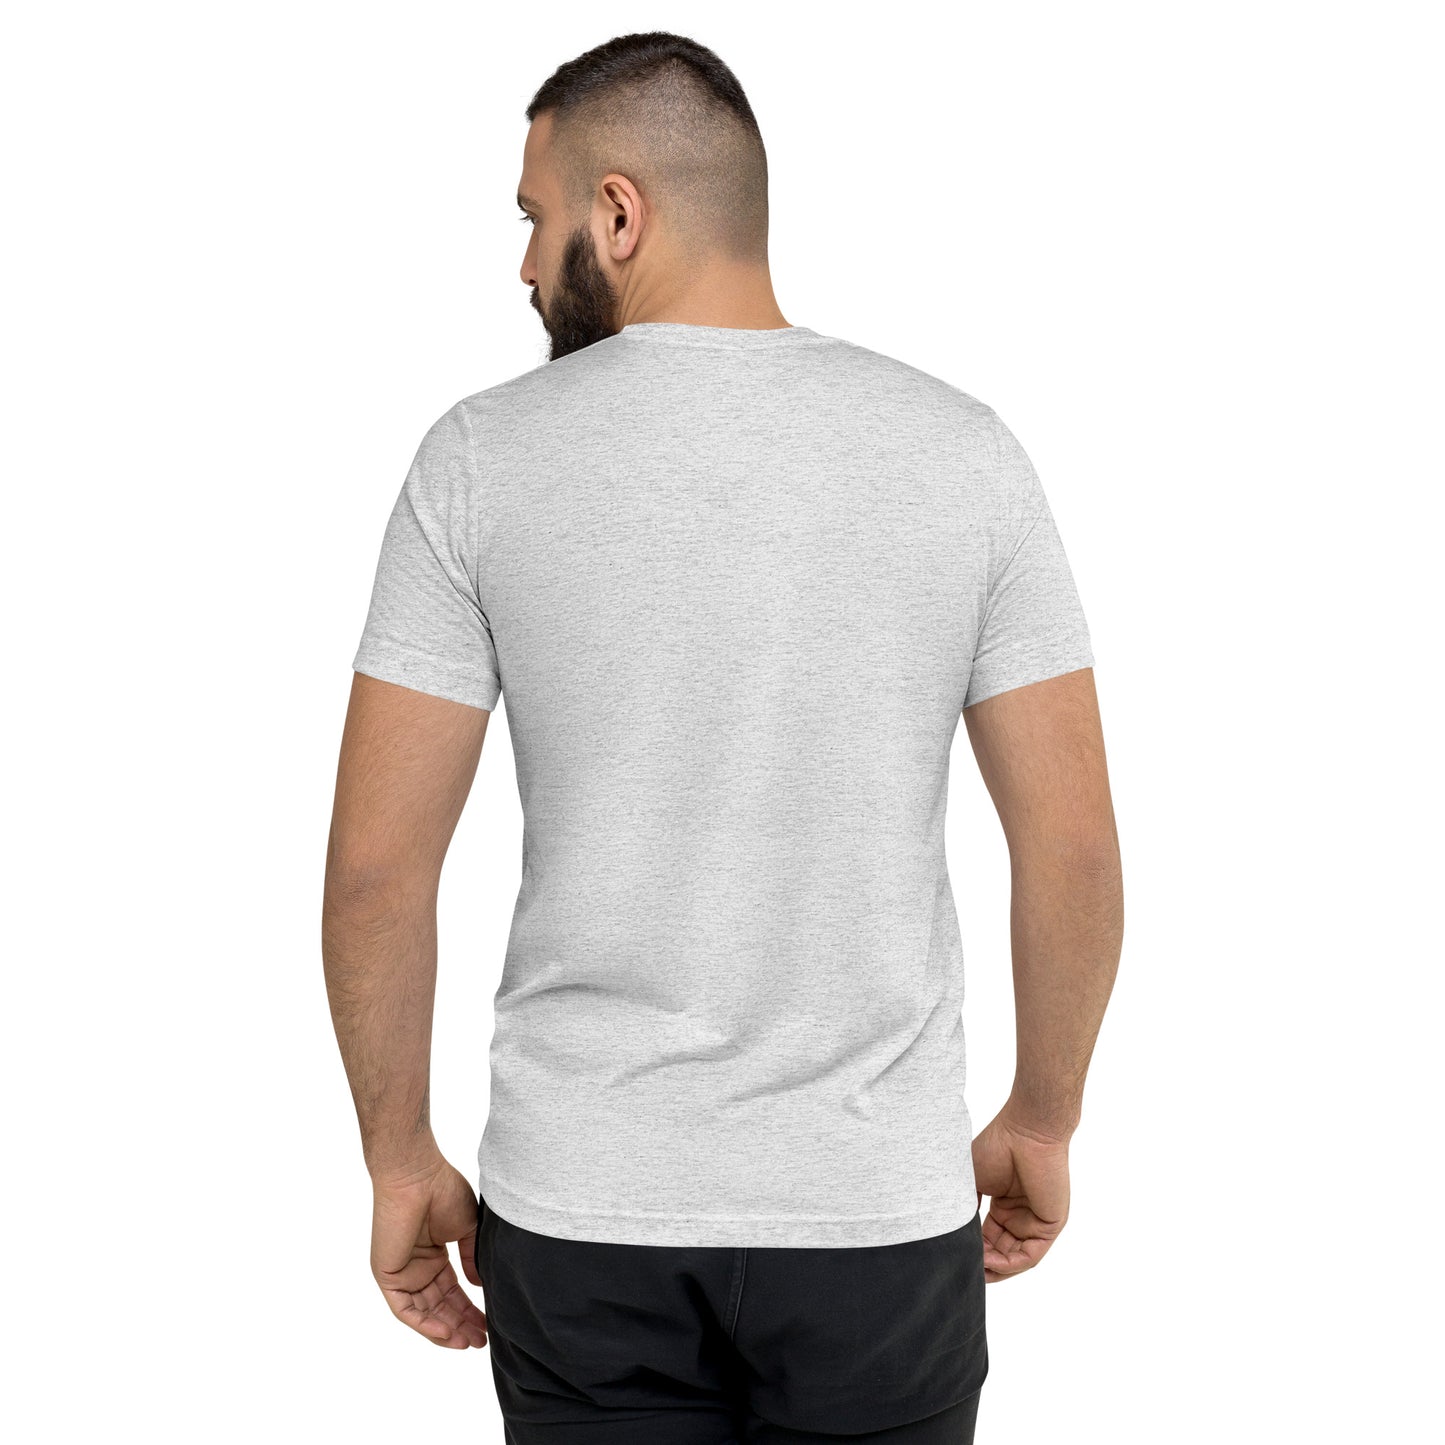 619 SAN Strong Short Sleeve Tri-Blend T-Shirt